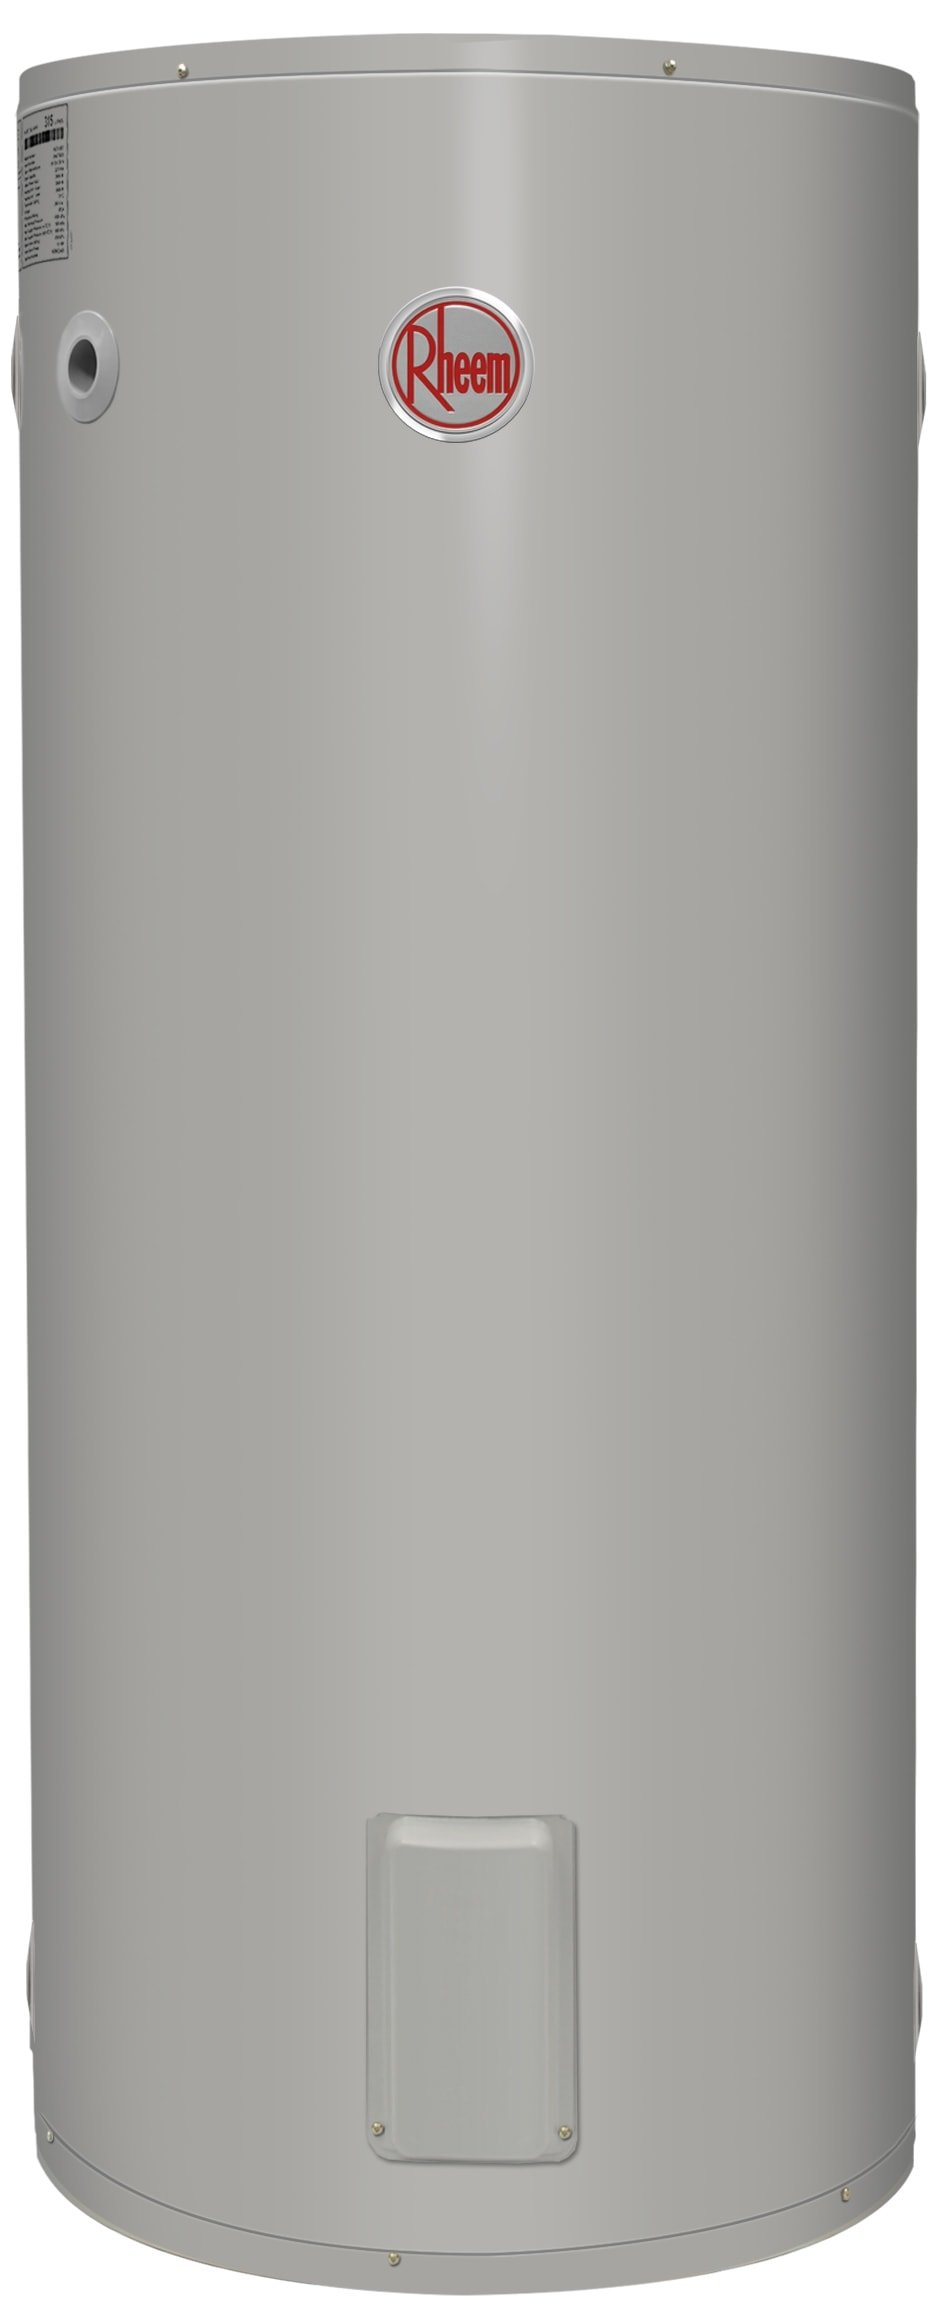 Rheemglas Electric 160L Water Heater